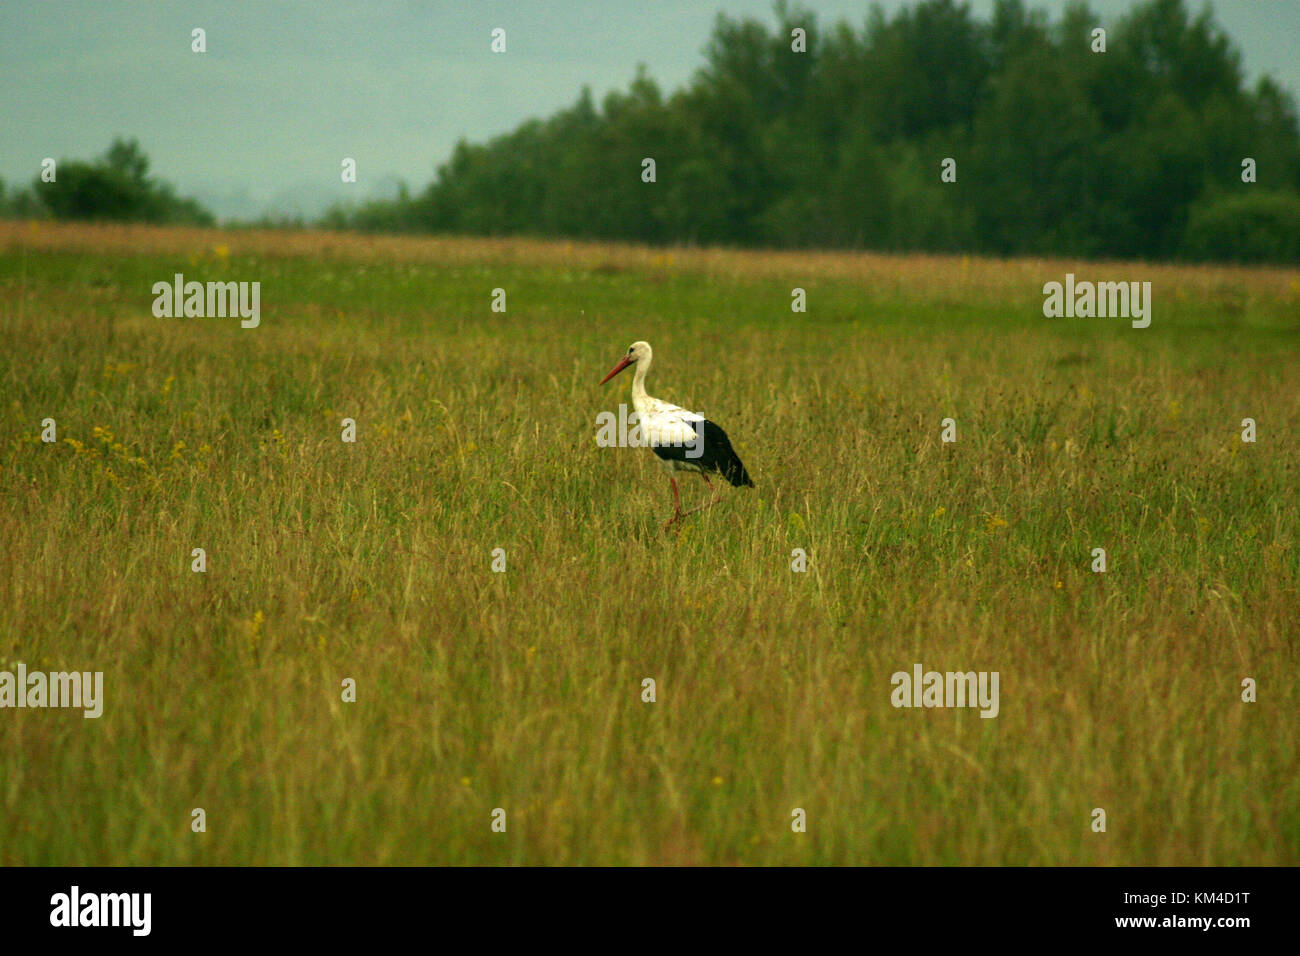 European white storks walking Stock Photo